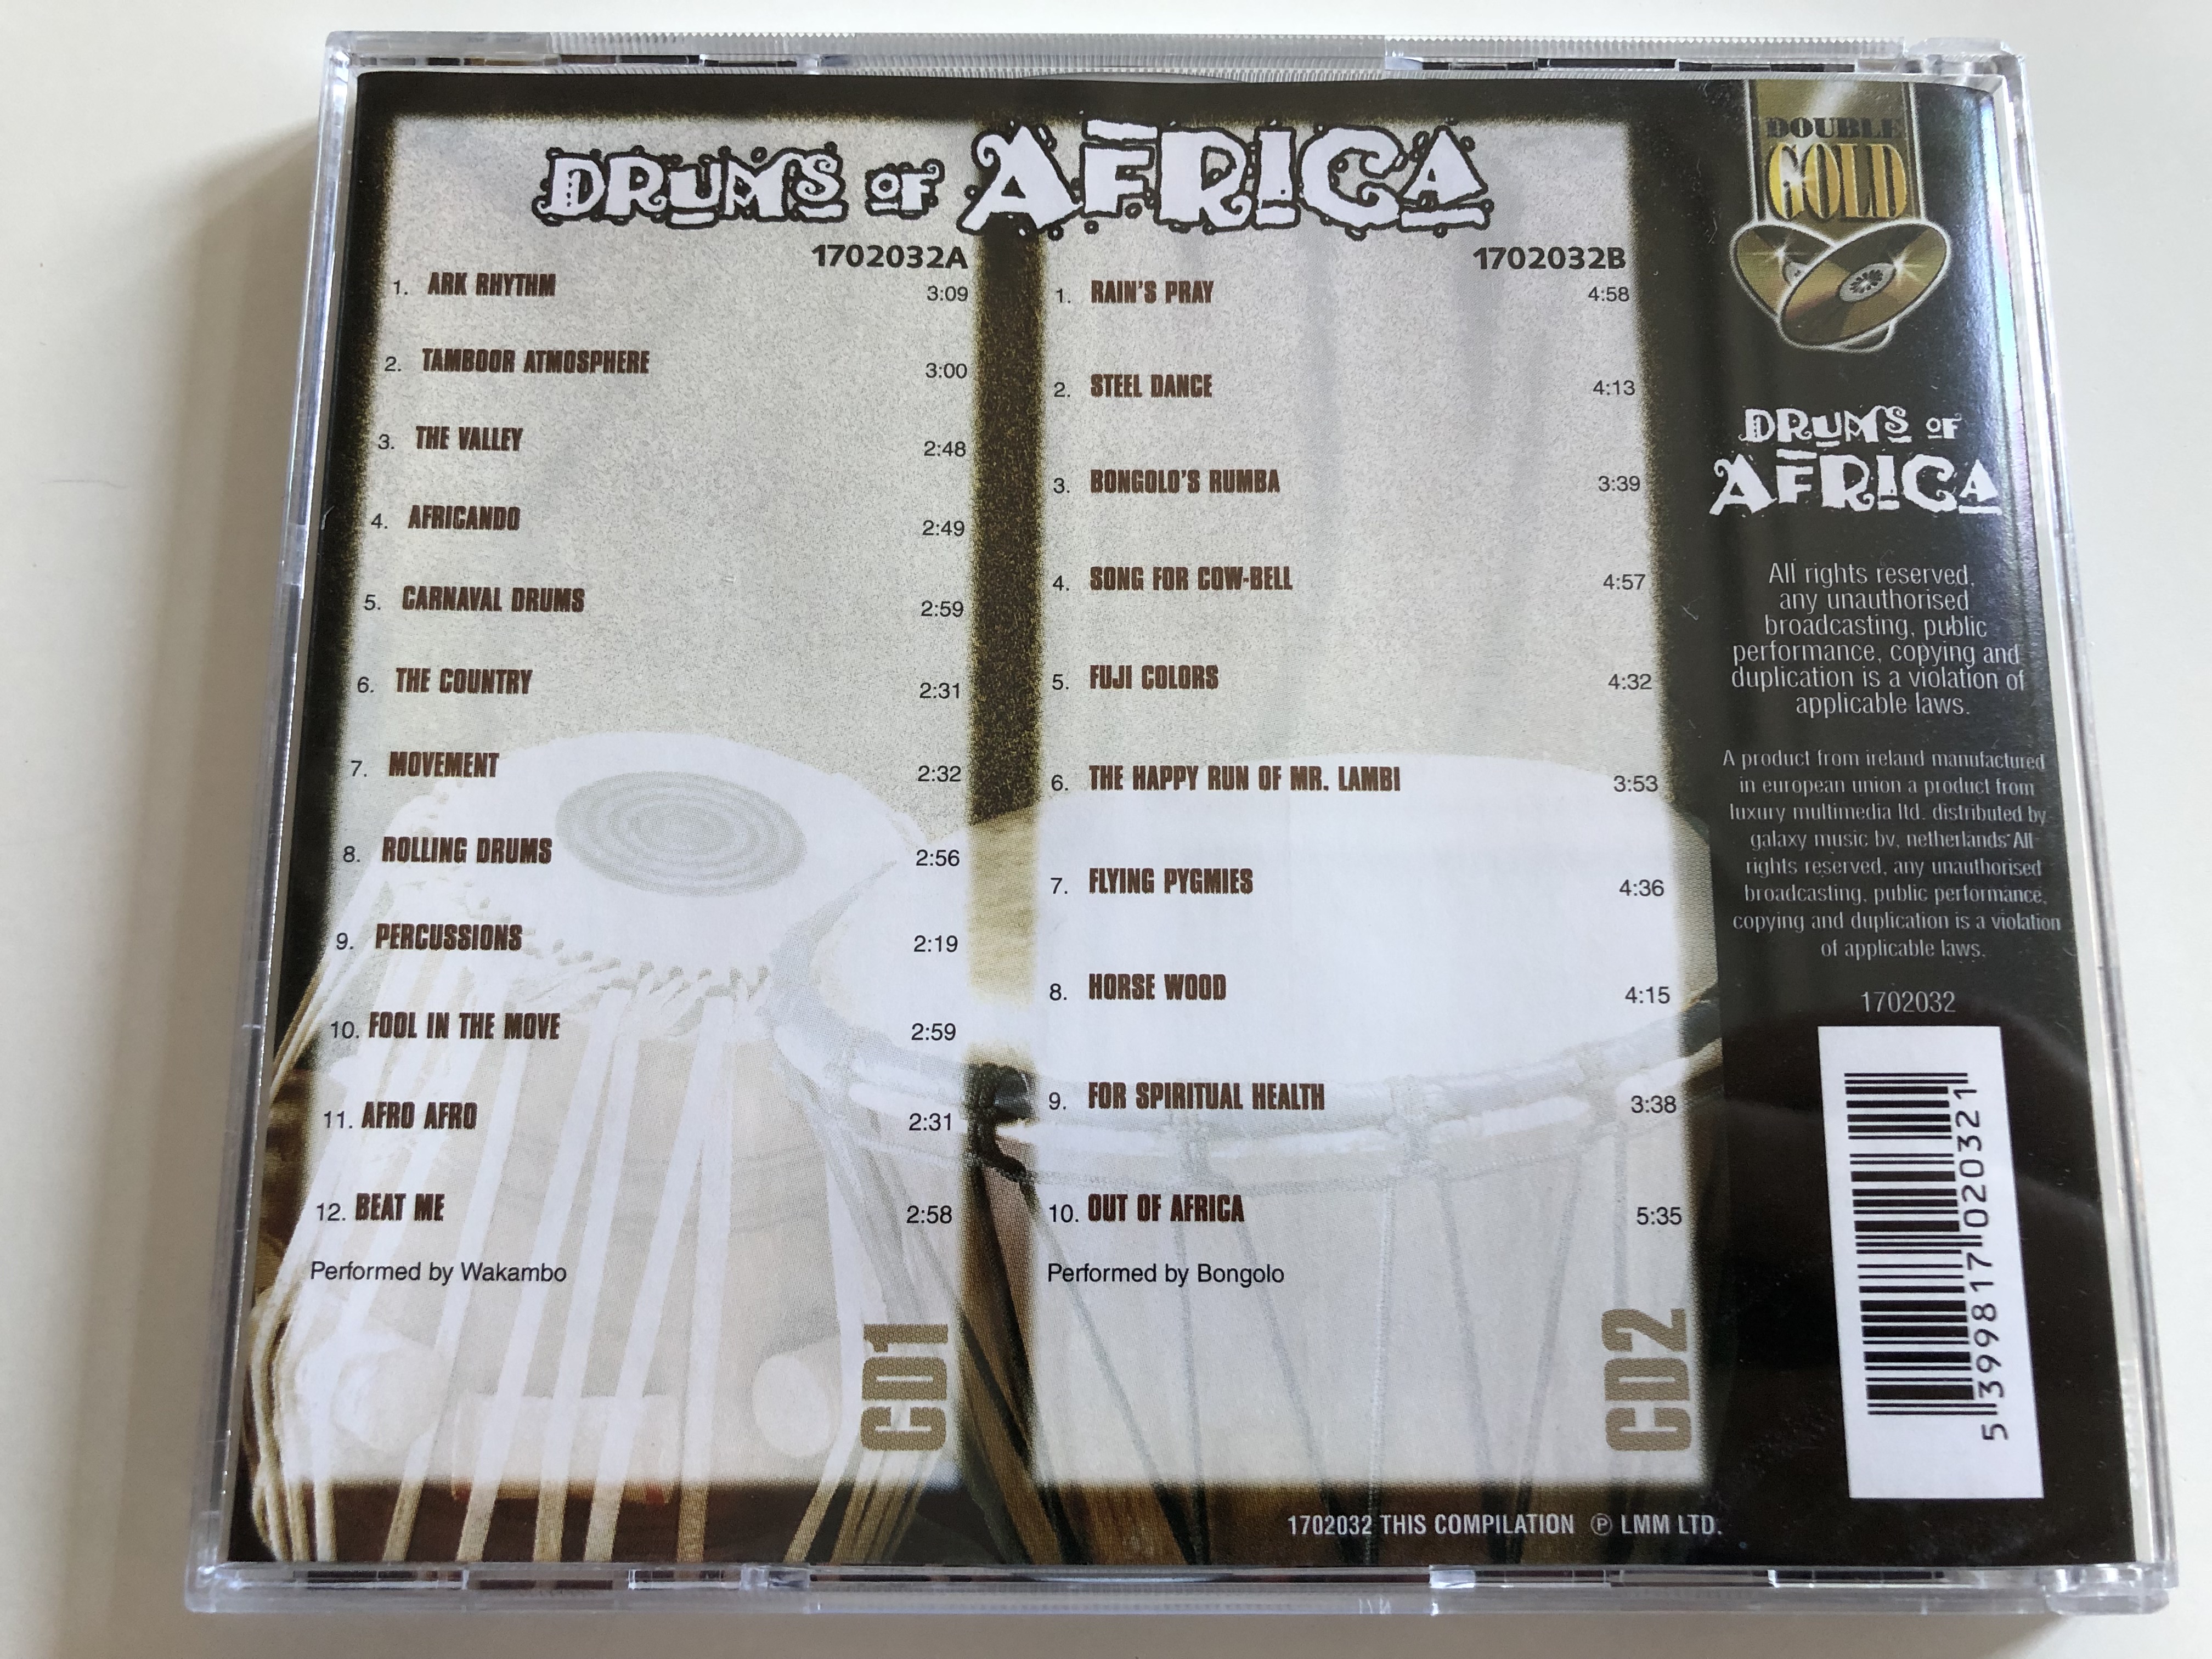 drums-of-africa-ark-rhythm-tamboor-atmosphere-the-valley-africando-carnaval-drums-rain-s-pray-steel-dance-bongolo-s-rumba-fuji-colors-flying-pygmies-lmm-2x-audio-cd-1702032-3-.jpg